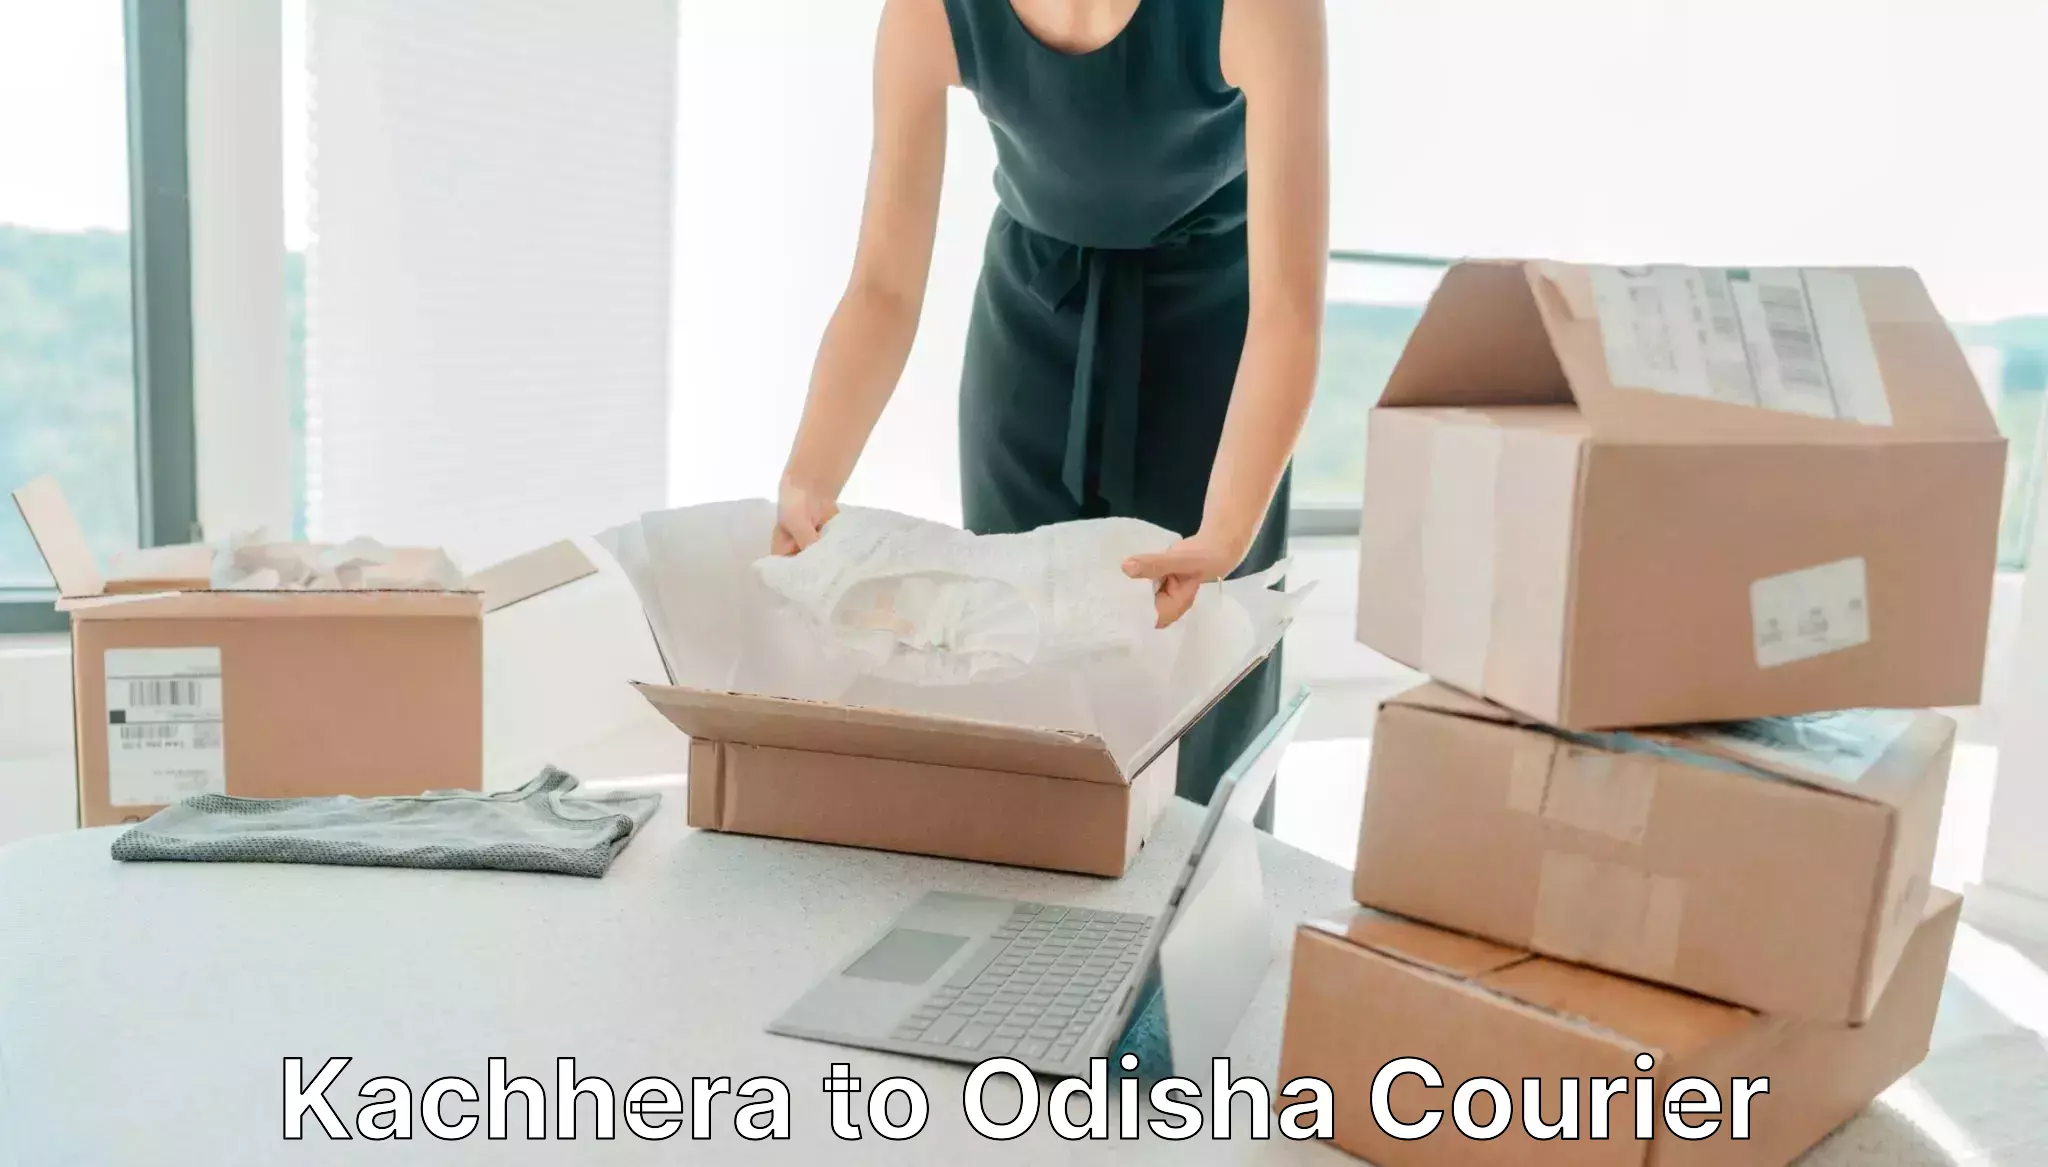 Fast shipping solutions Kachhera to Raruan